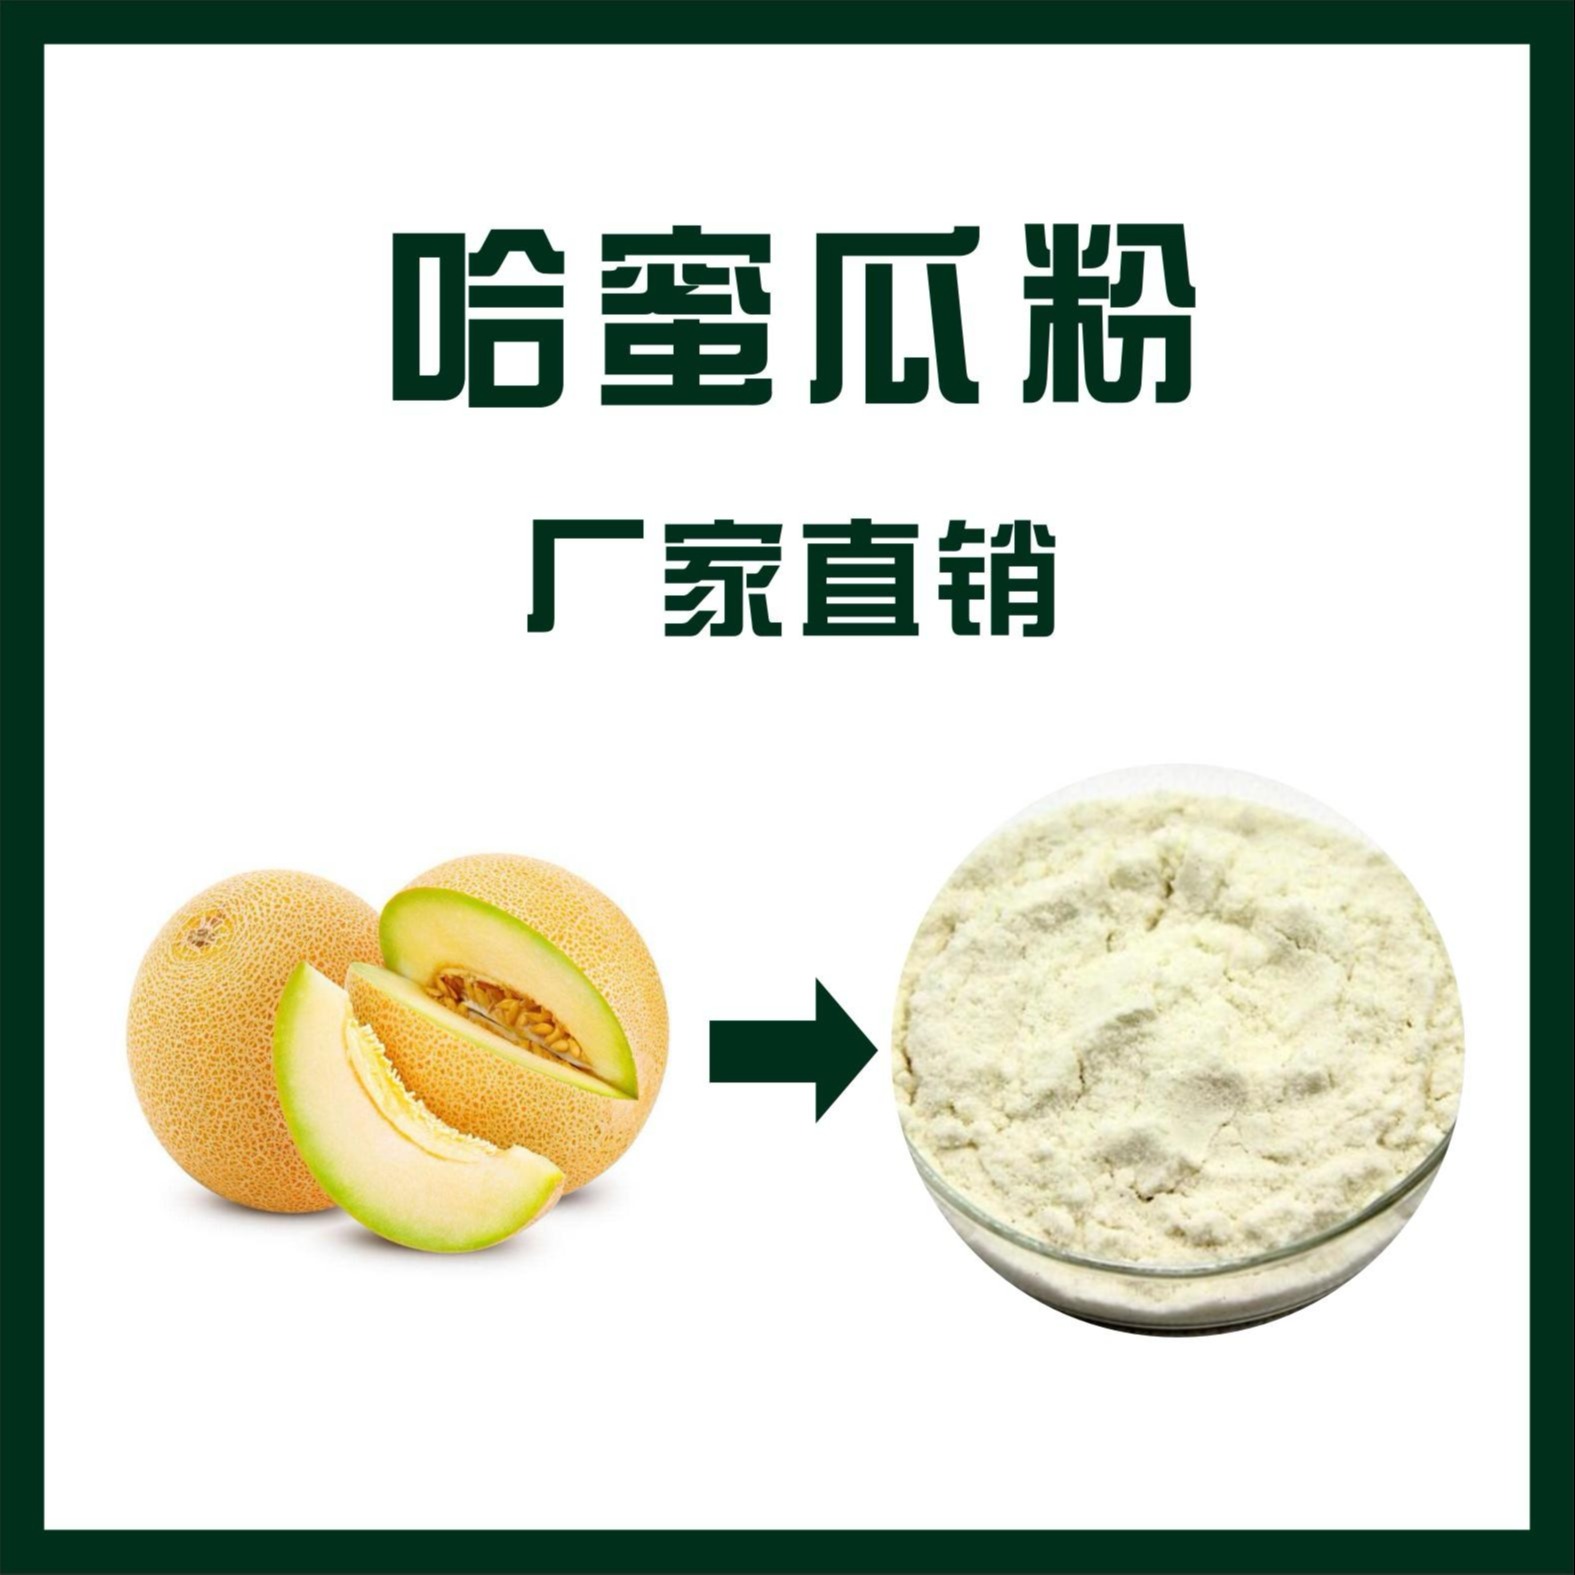 哈蜜瓜粉,Cantaloupe powder